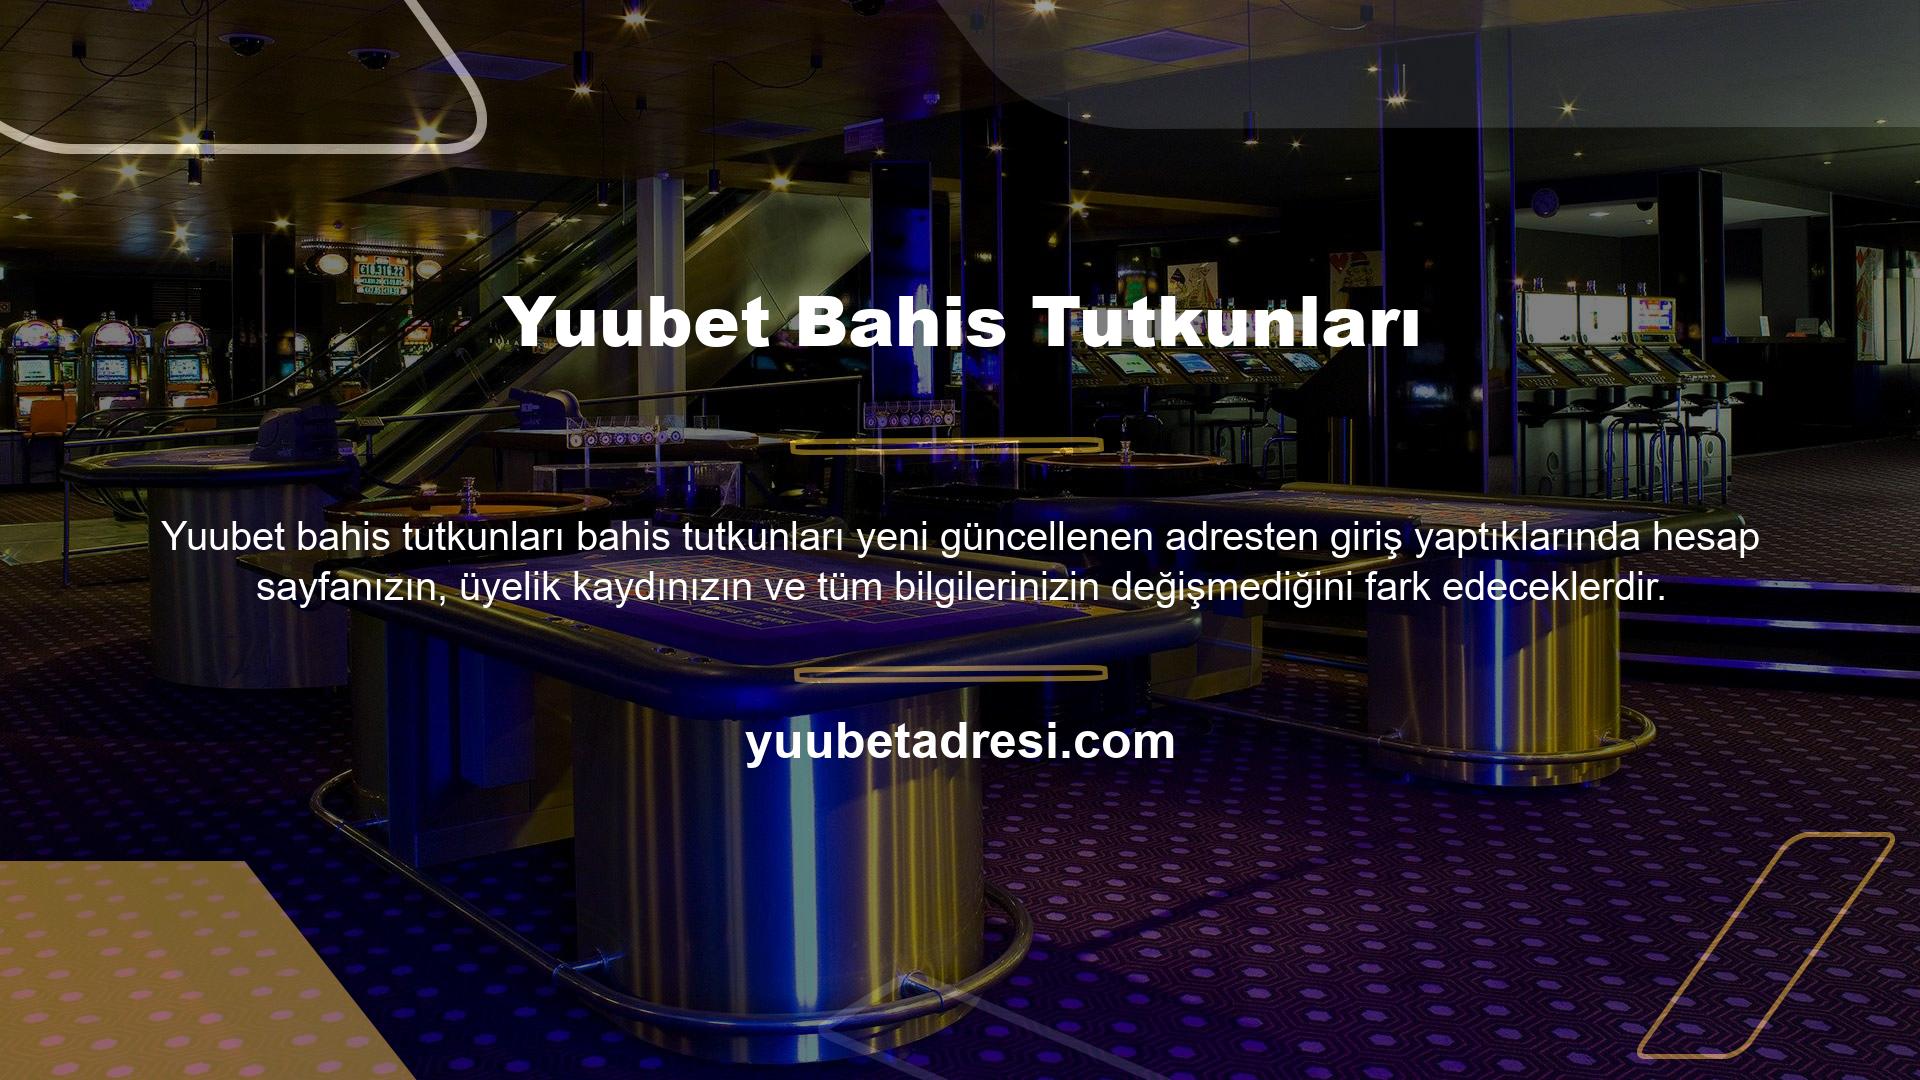 Yuubet Bahis, çeşitli bahis alanları aracılığıyla tüm kullanıcılara yüksek memnuniyet sağlamaktadır